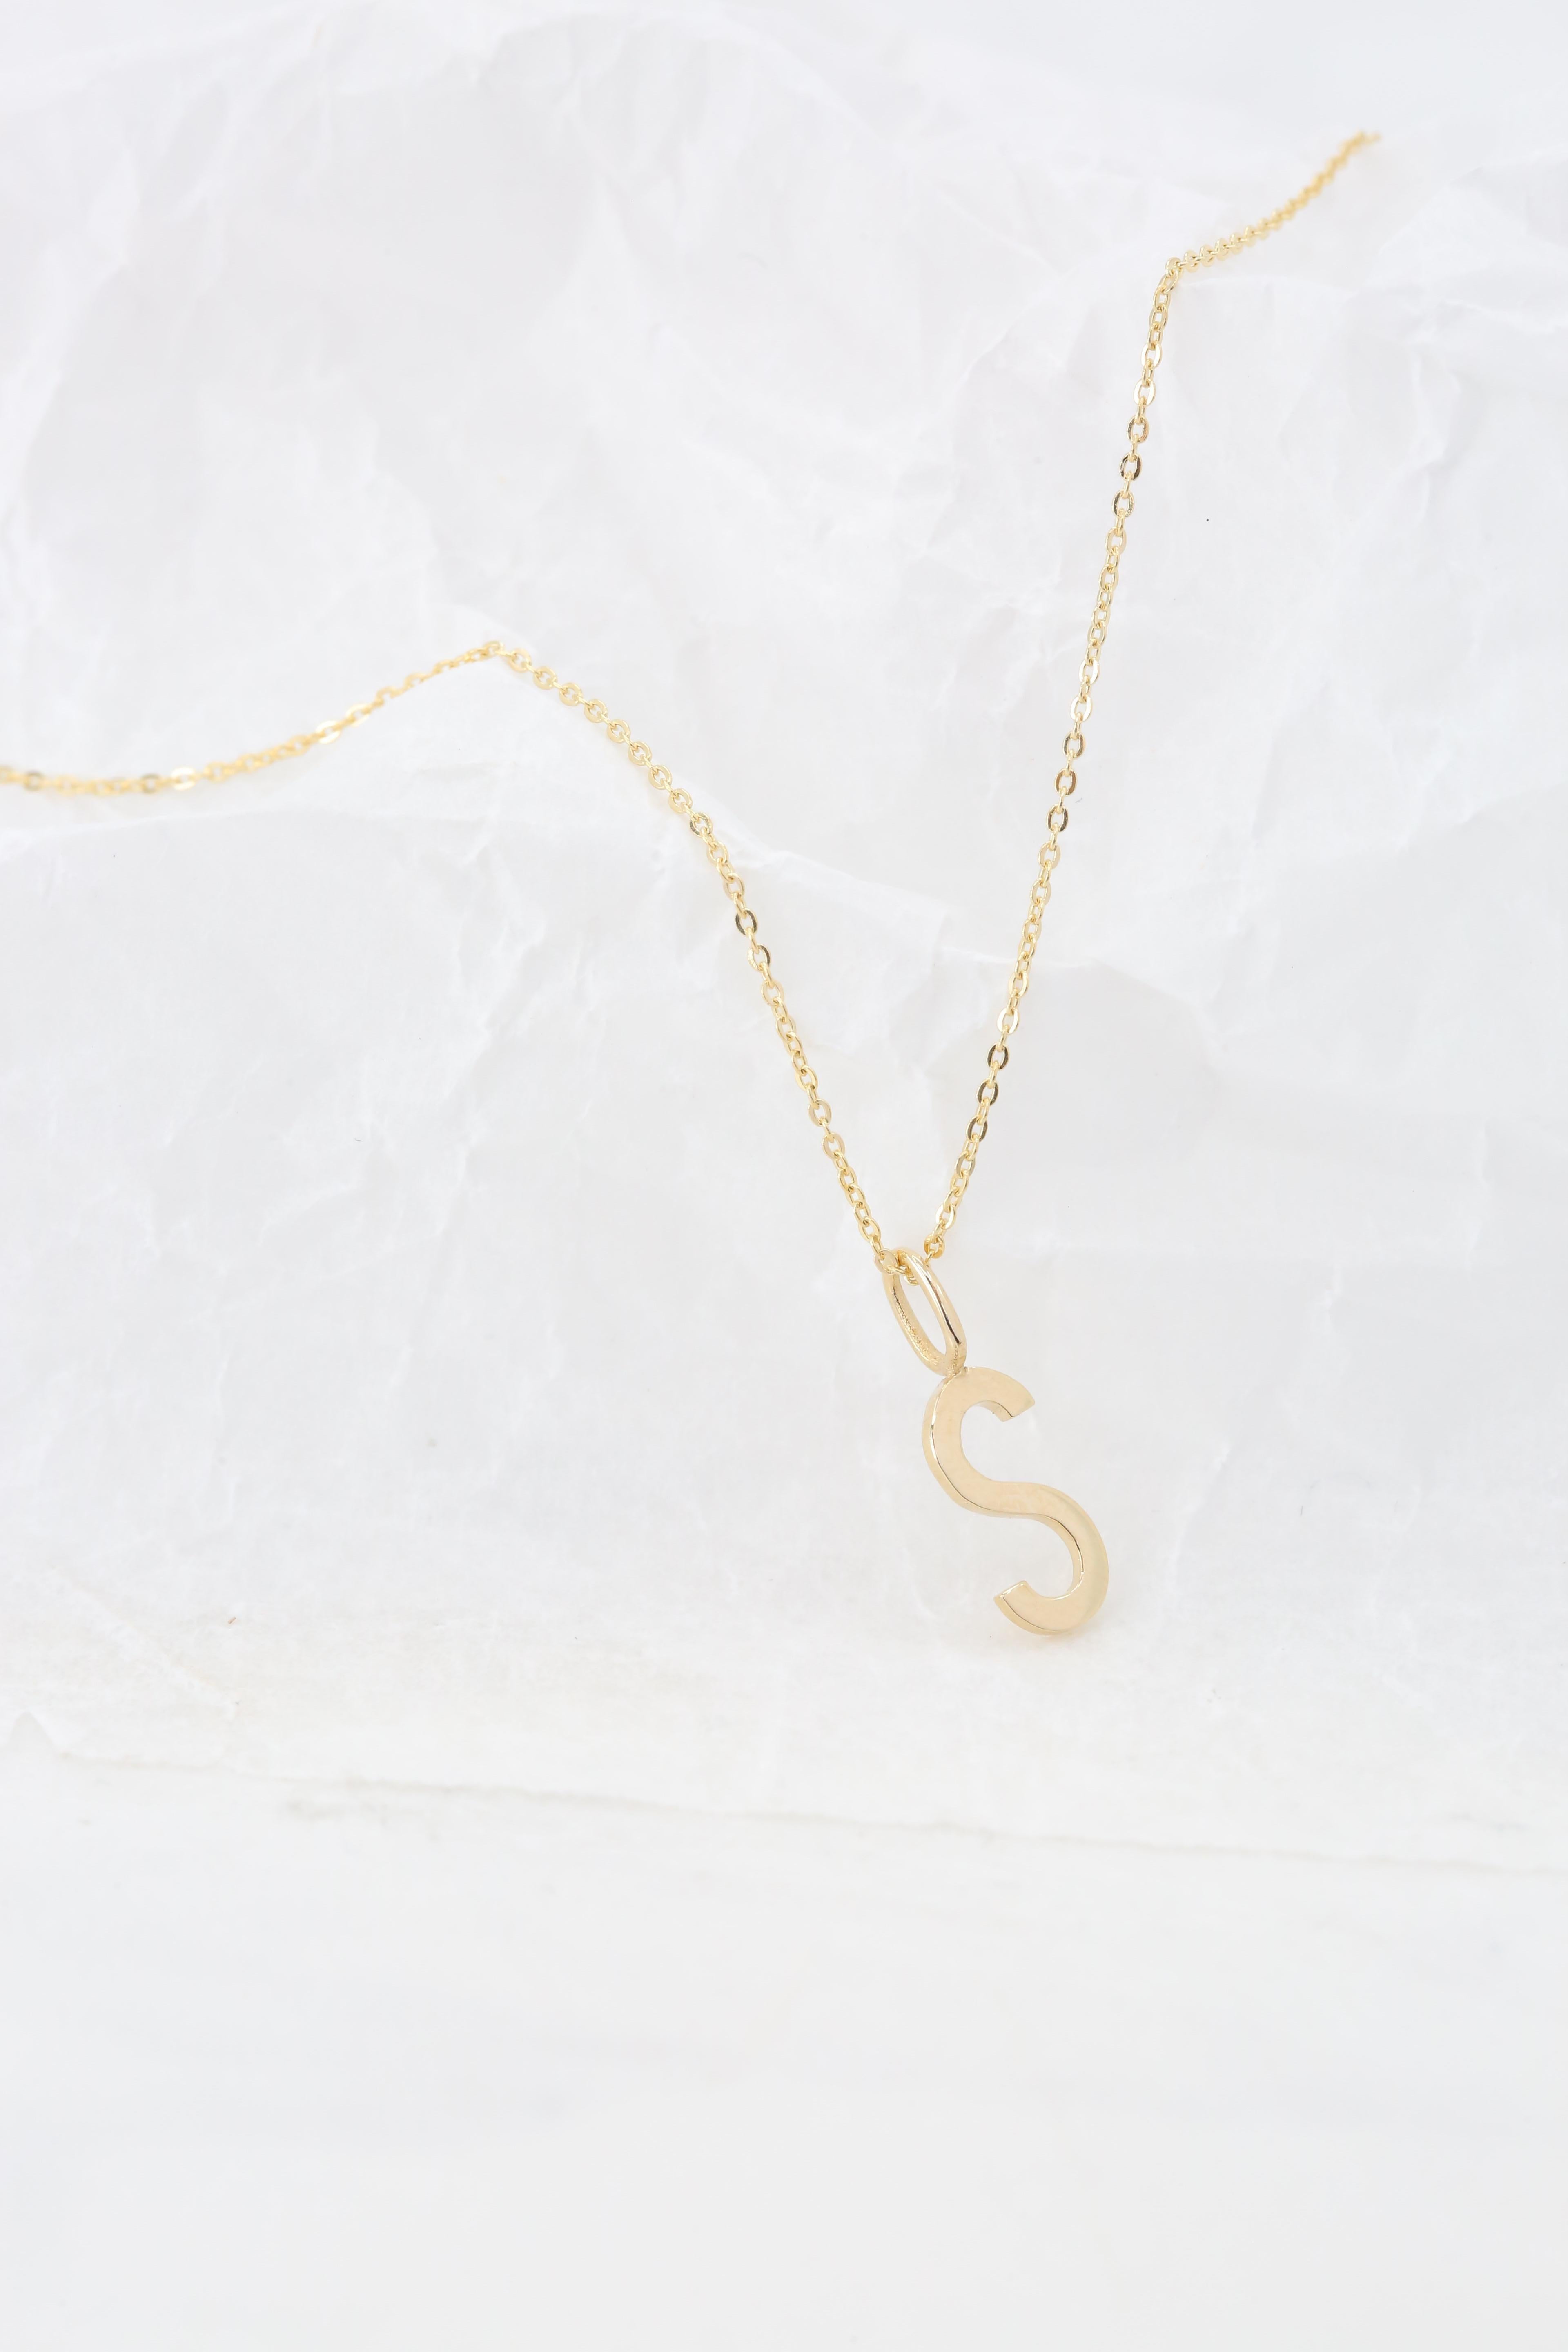 Modern 14k Gold Necklaces, Letter Necklace Models, Letter S Gold Necklace-Gift Necklace For Sale